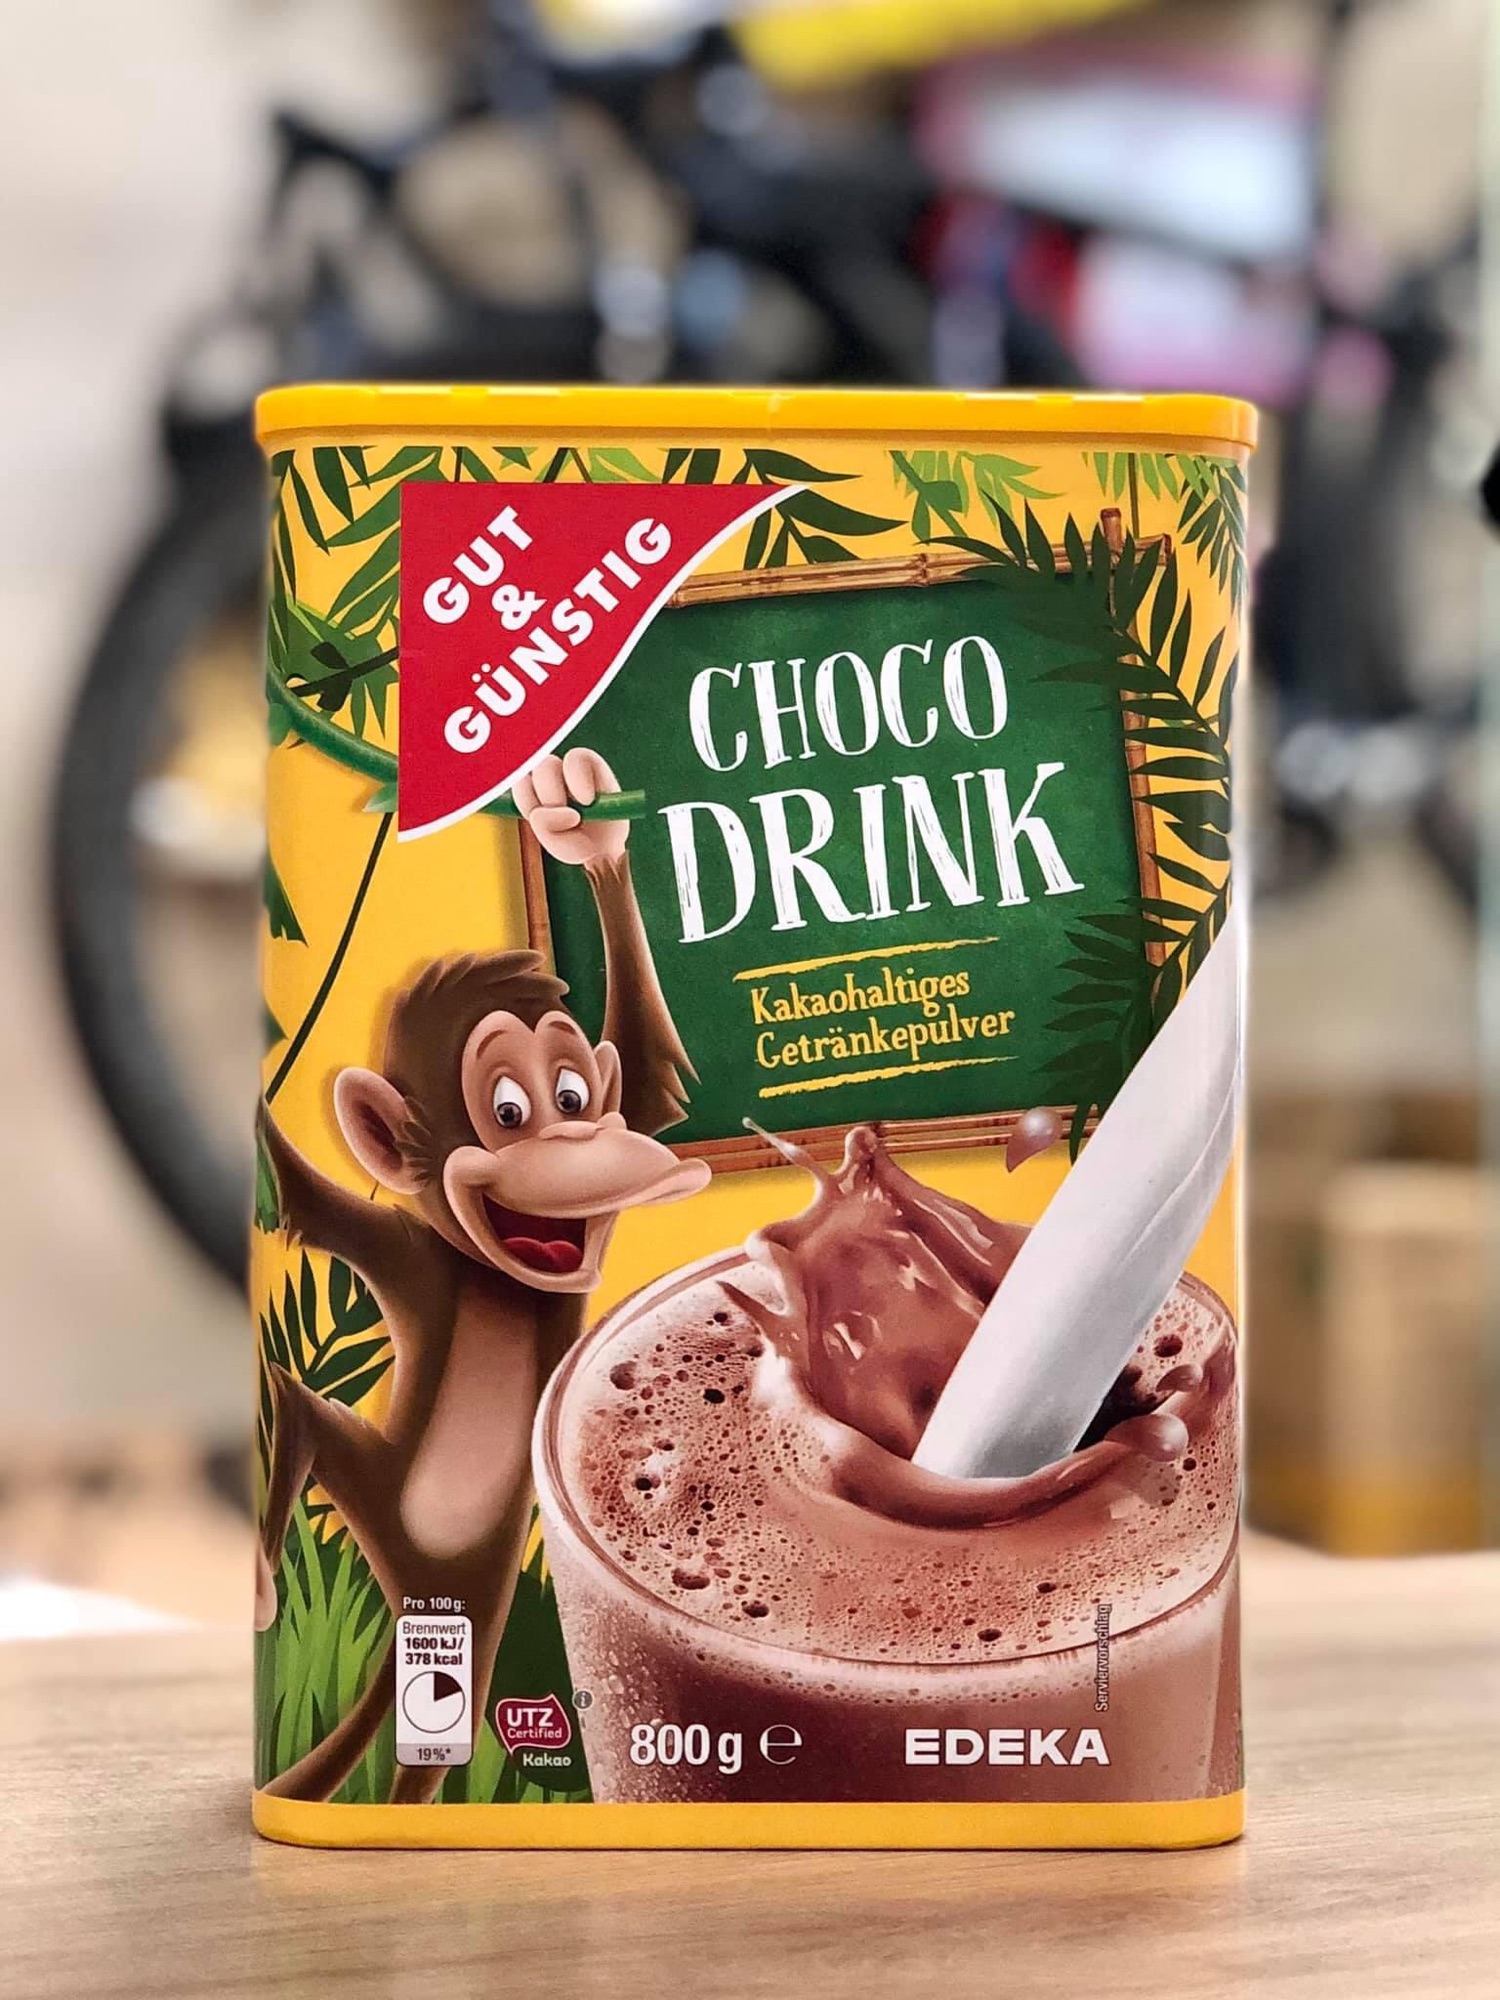 Bột cacao choco drink đức 800g